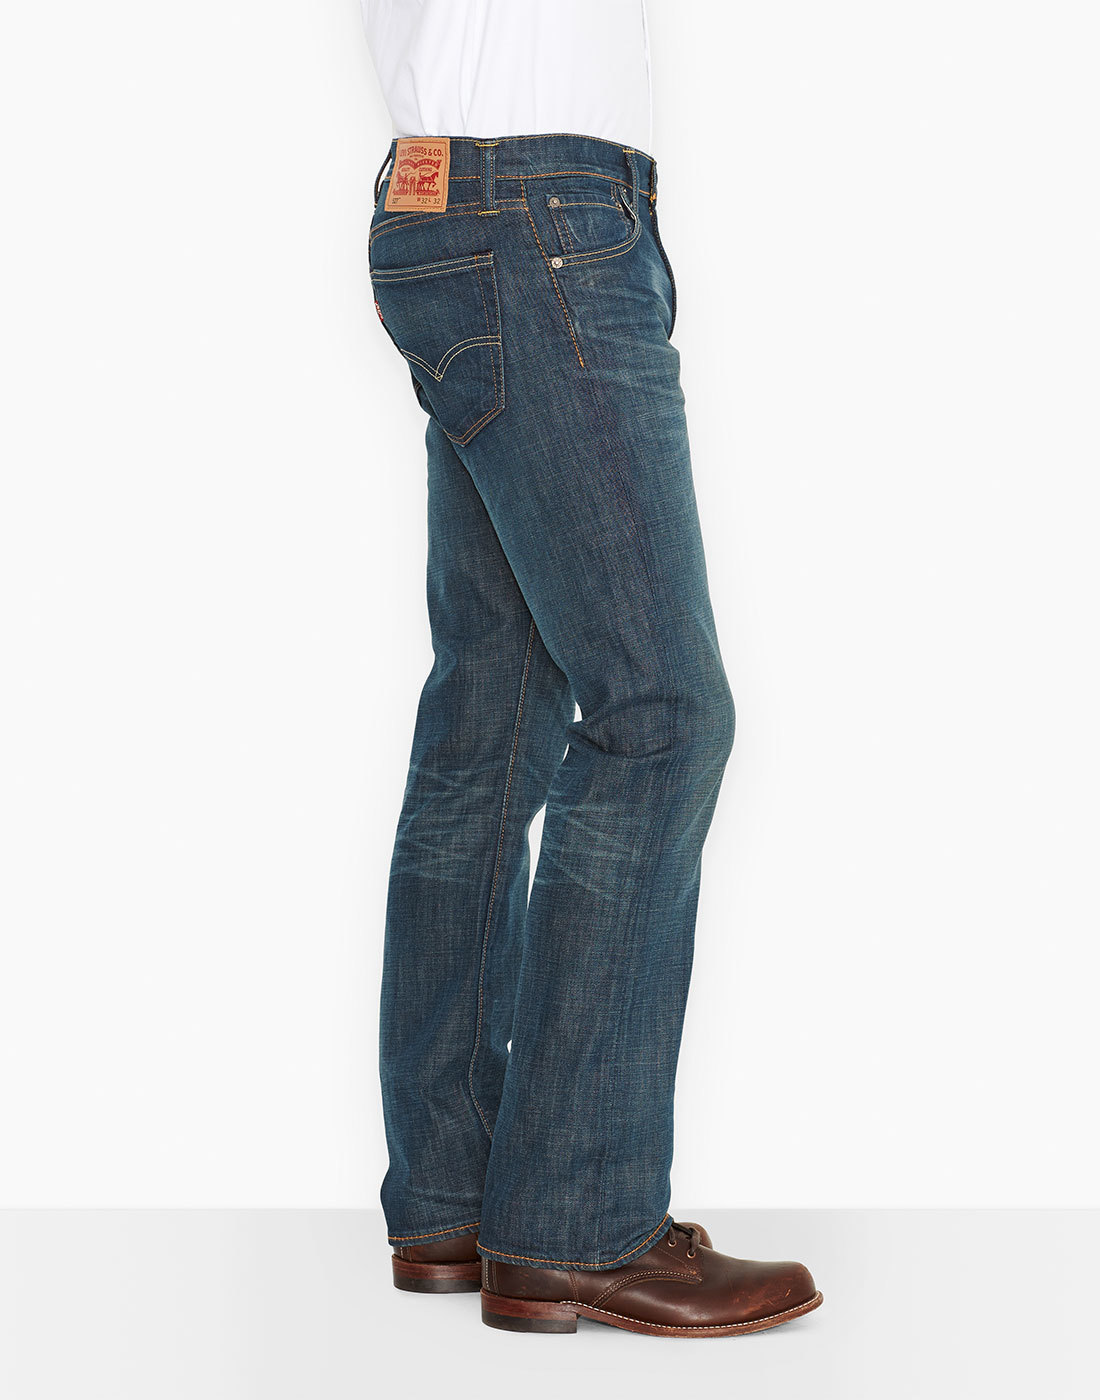 Levi's 527 Men's Jeans - Slim bootcut jeans